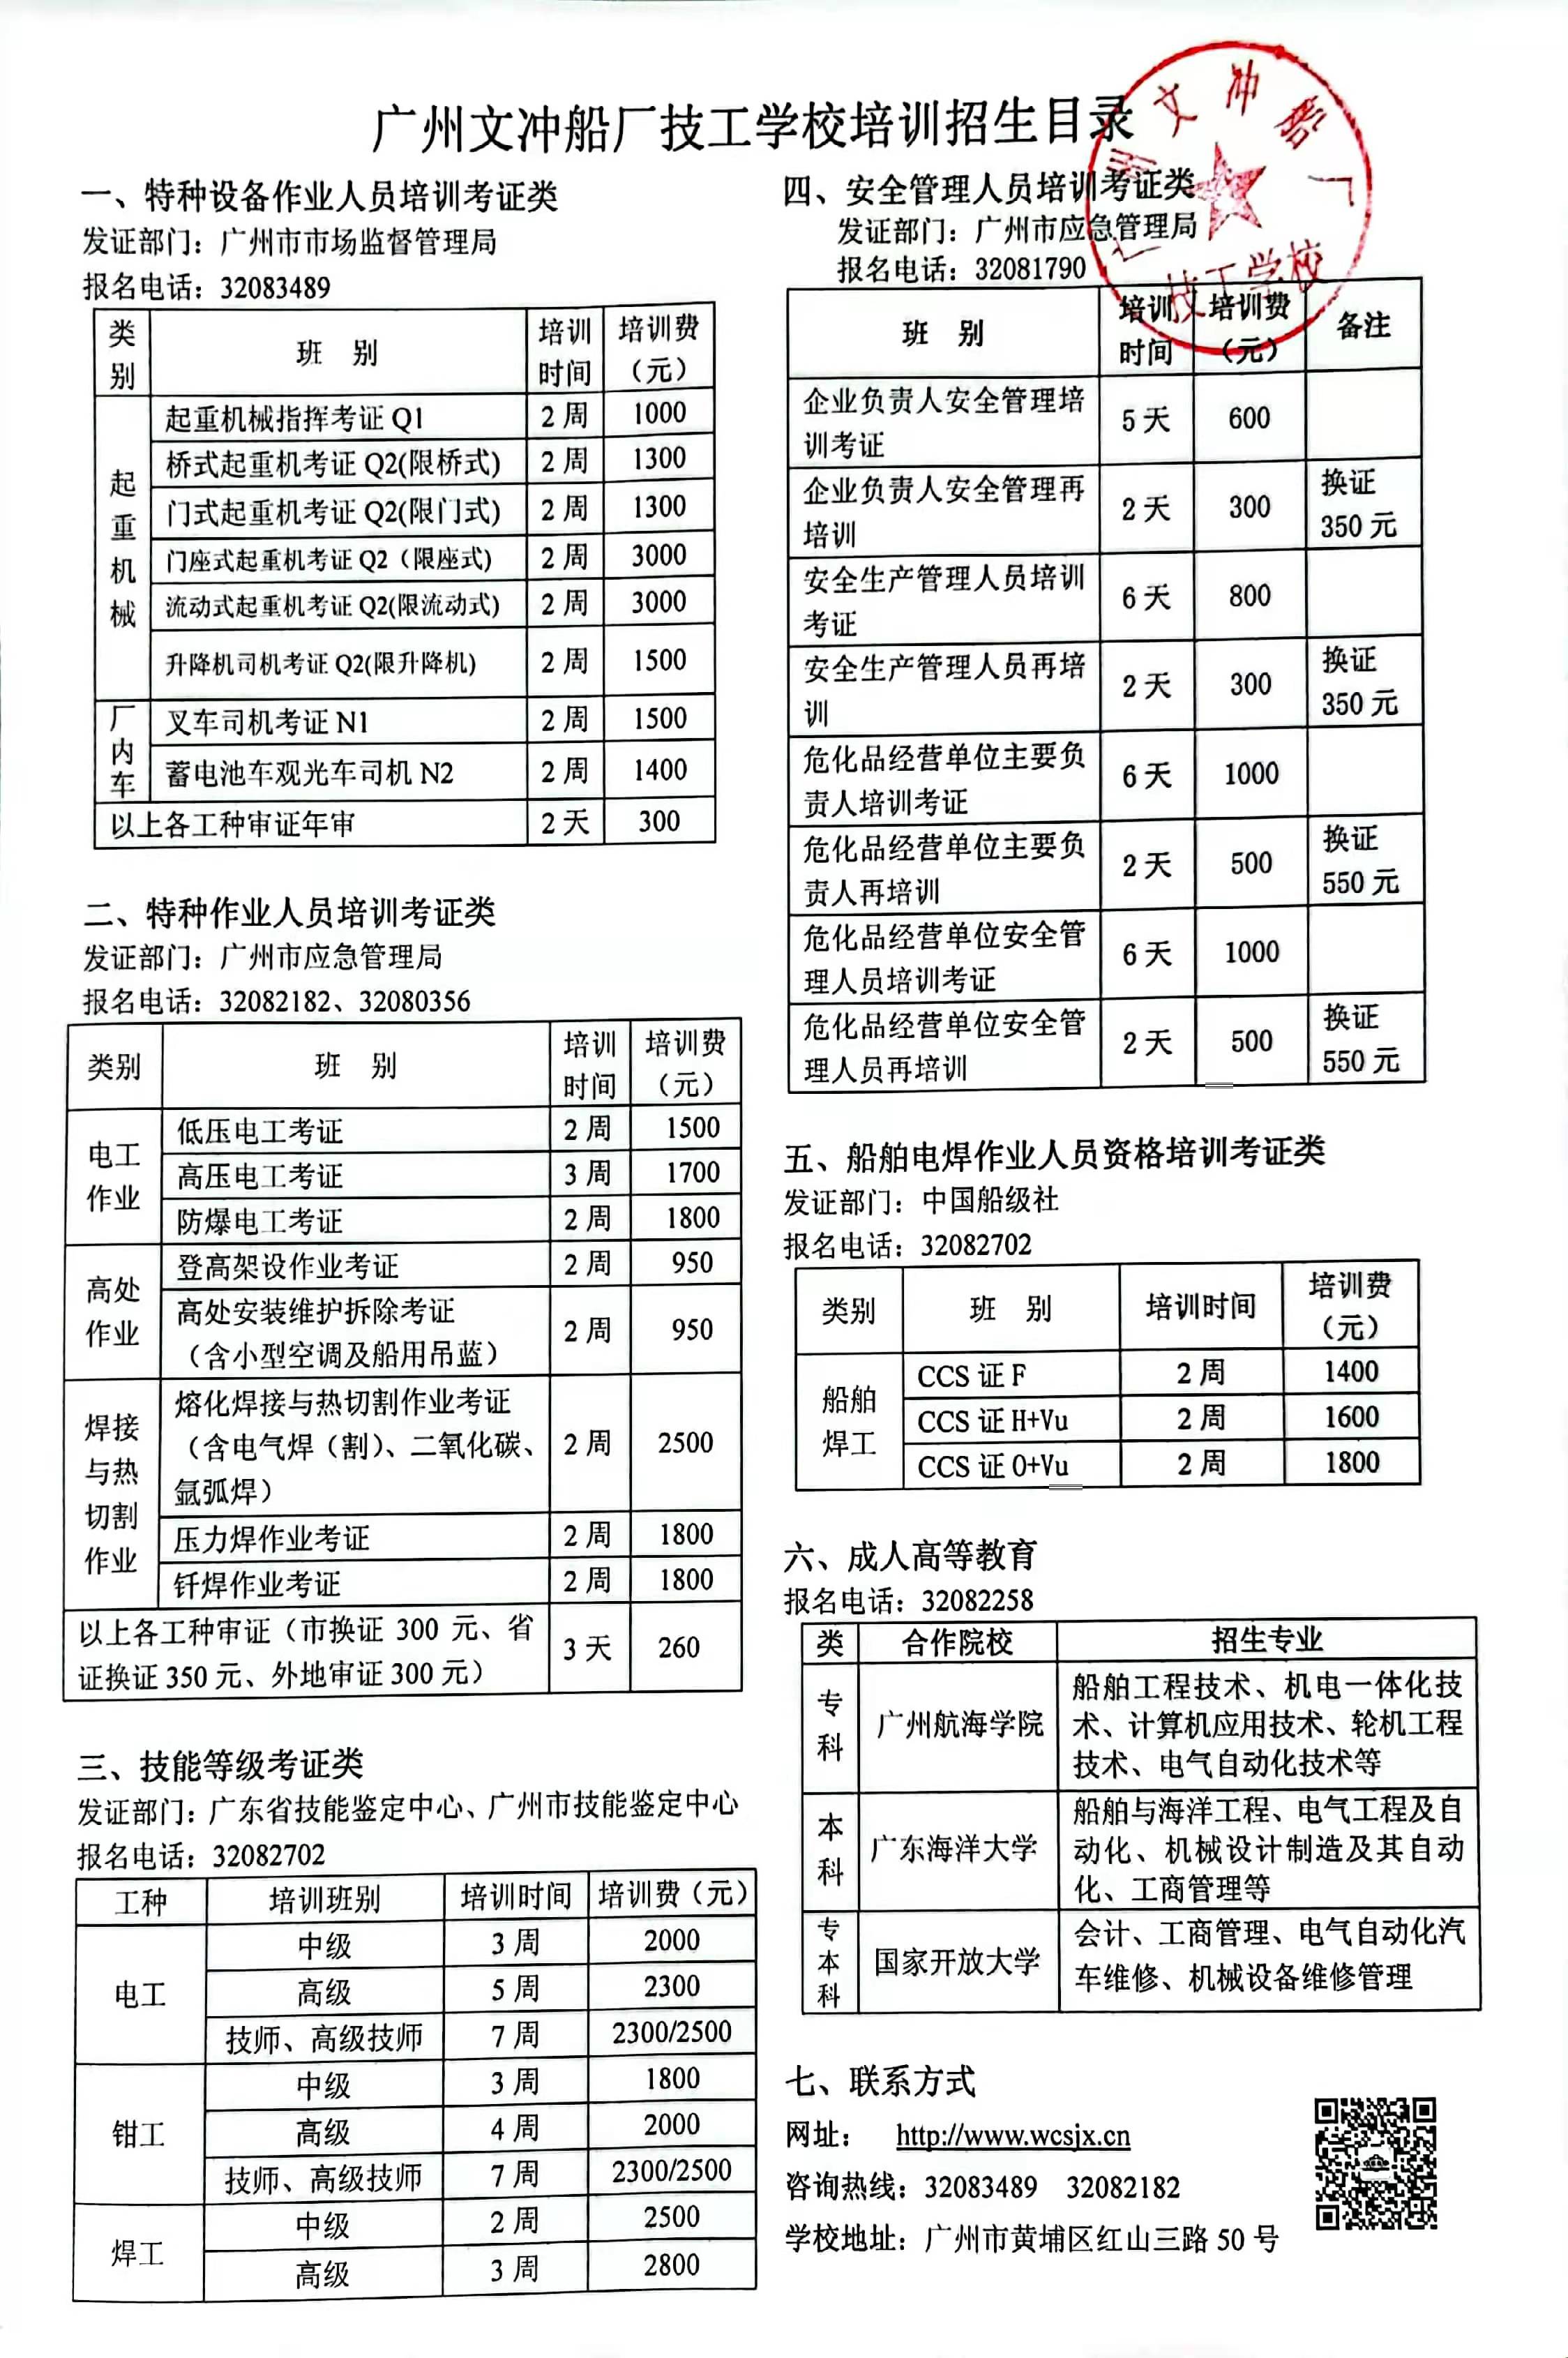 廣州文沖船廠技工學校培訓招生簡章2022.3.28.jpg